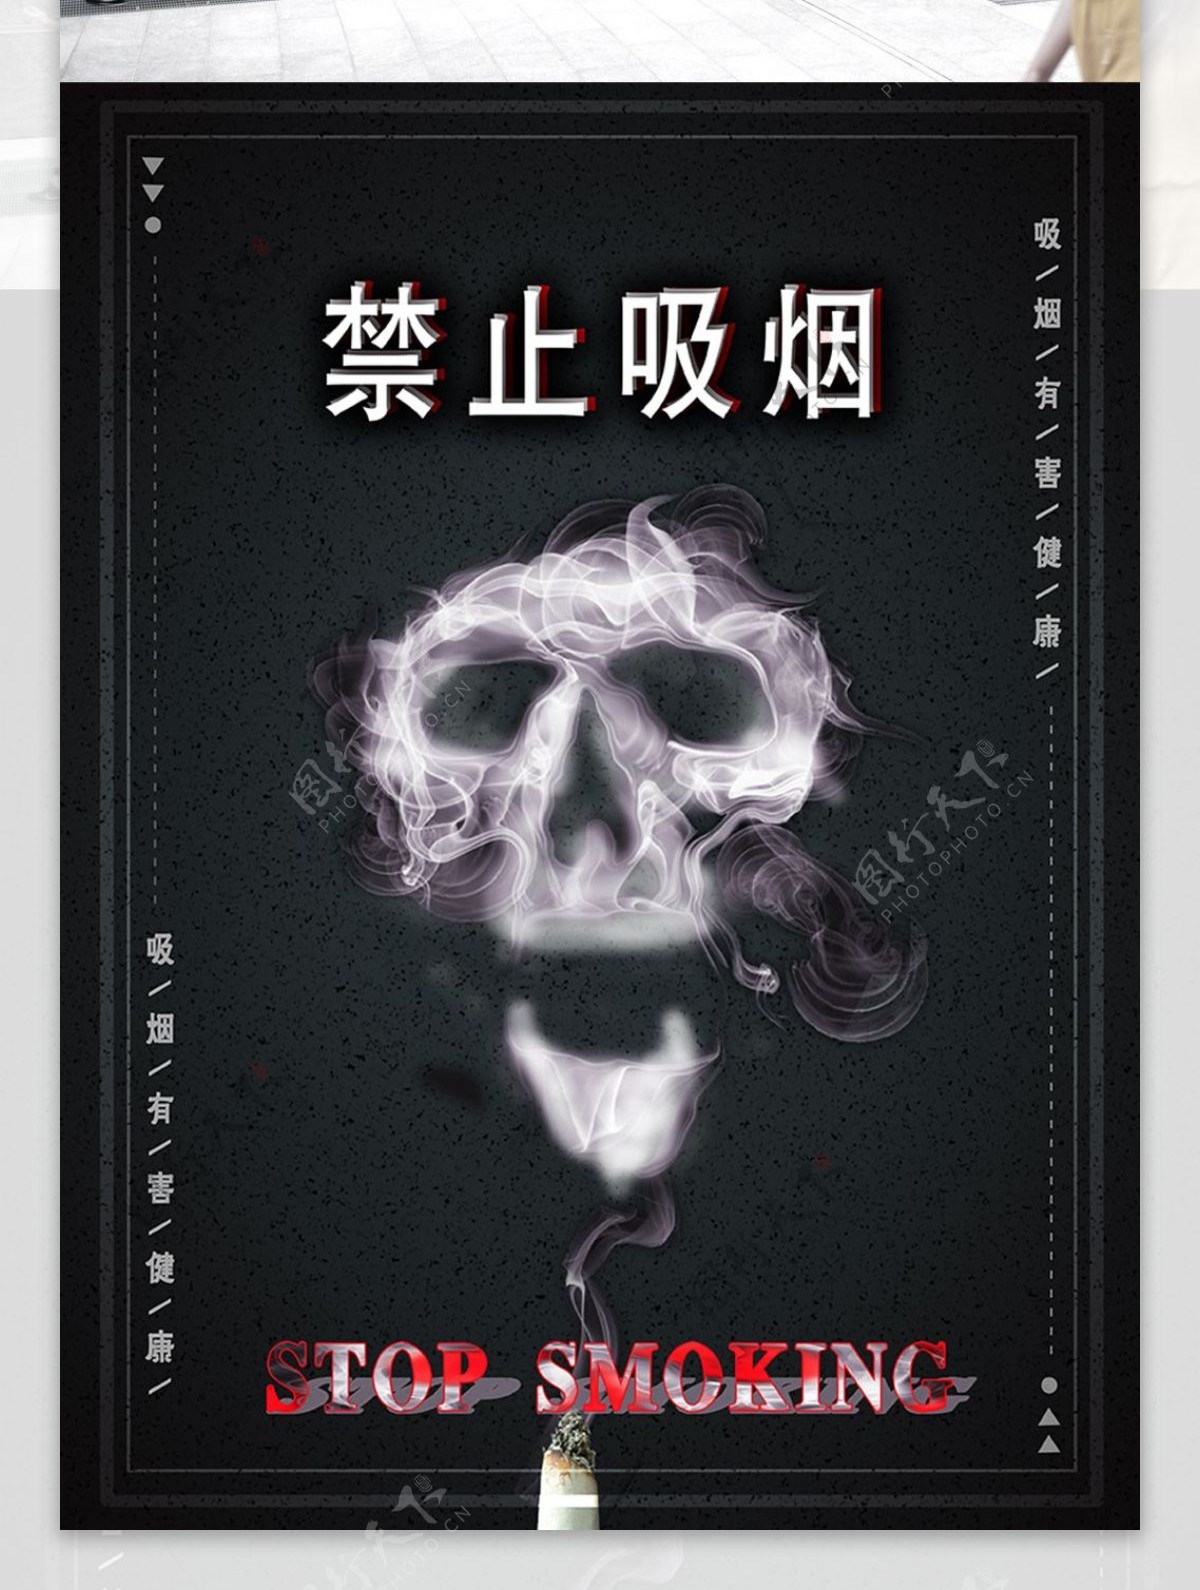 原创禁烟简单醒目公益海报